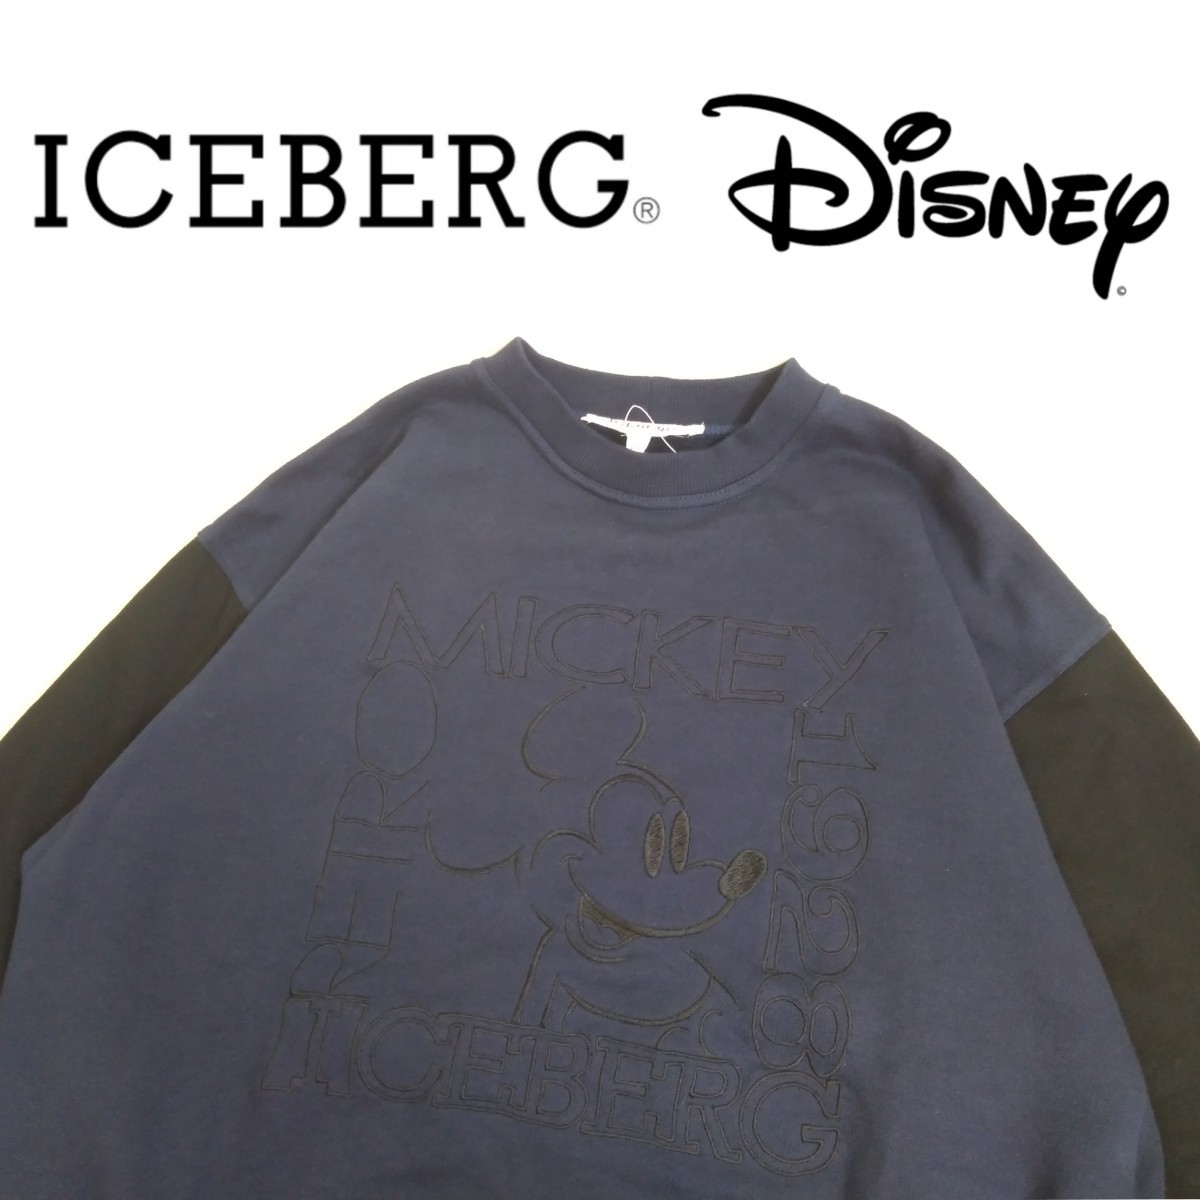 デッドストック イタリア製 ICEBERG × Disney ミッキー ツートーン